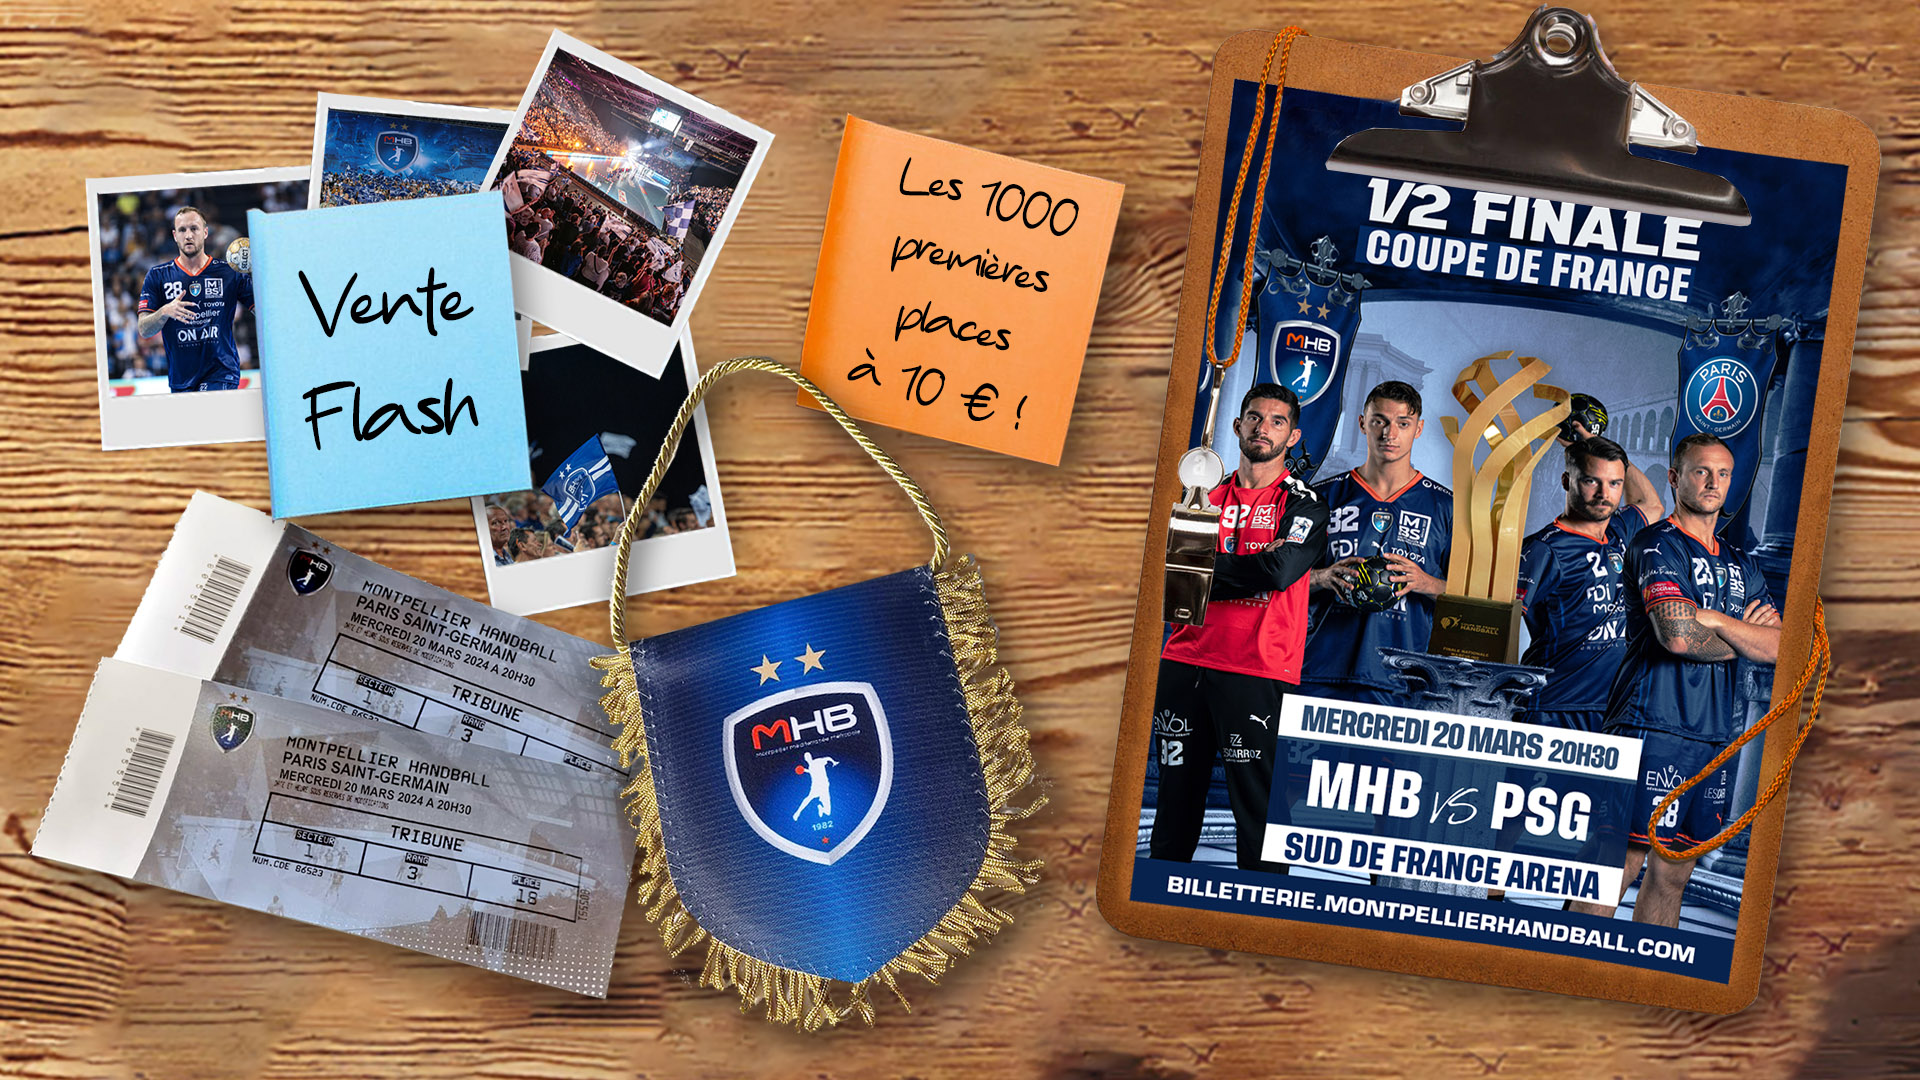 Demi-finale Coupe de France MHB - PSG : la billetterie est ouverte !